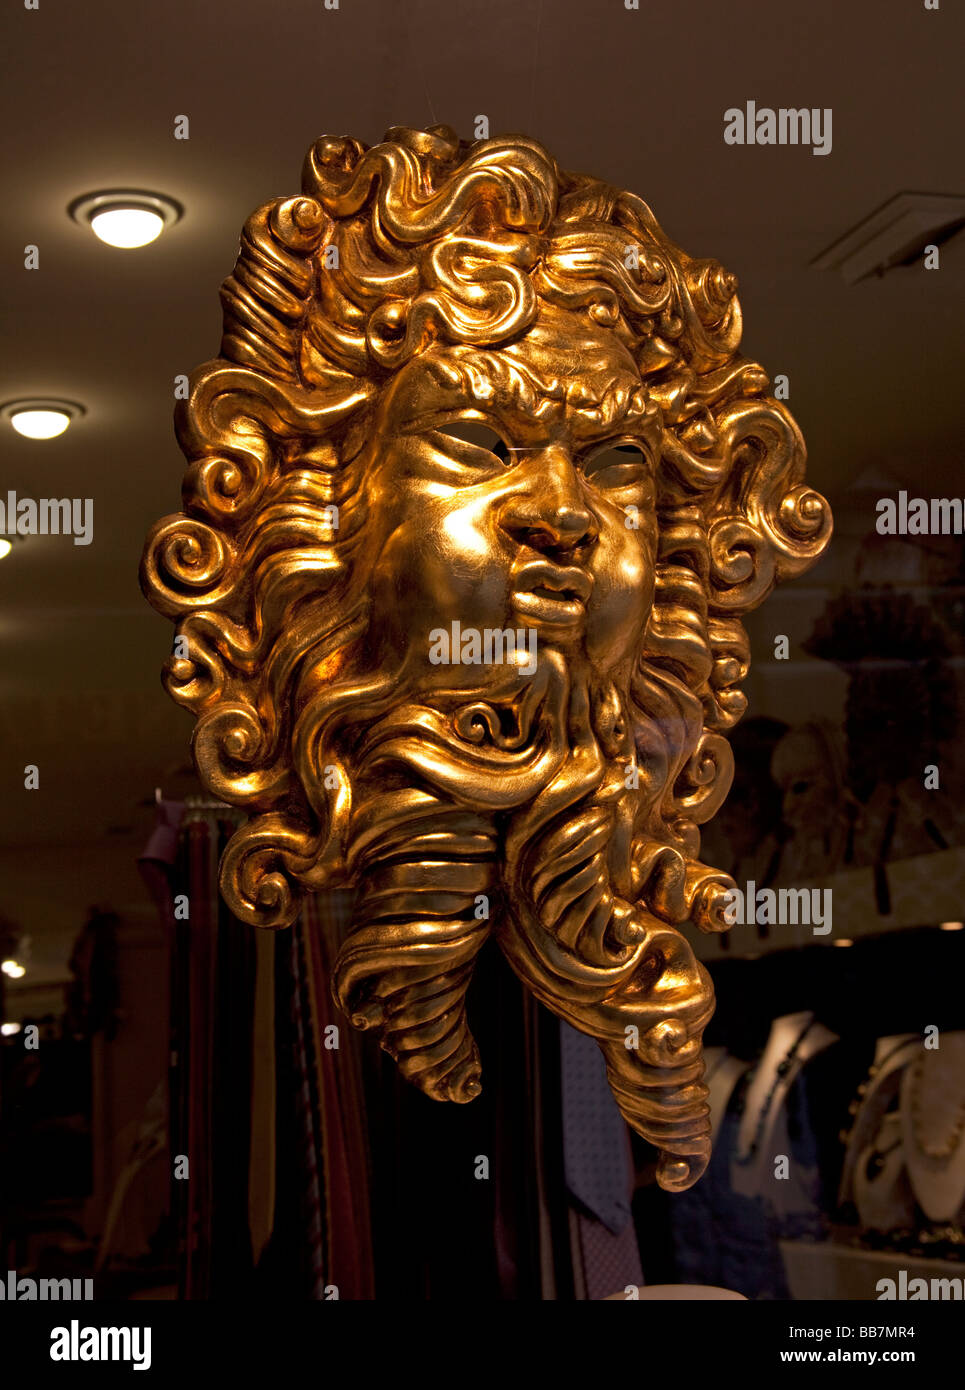 Masque peint d'or en vitrine Venise, Italie Banque D'Images